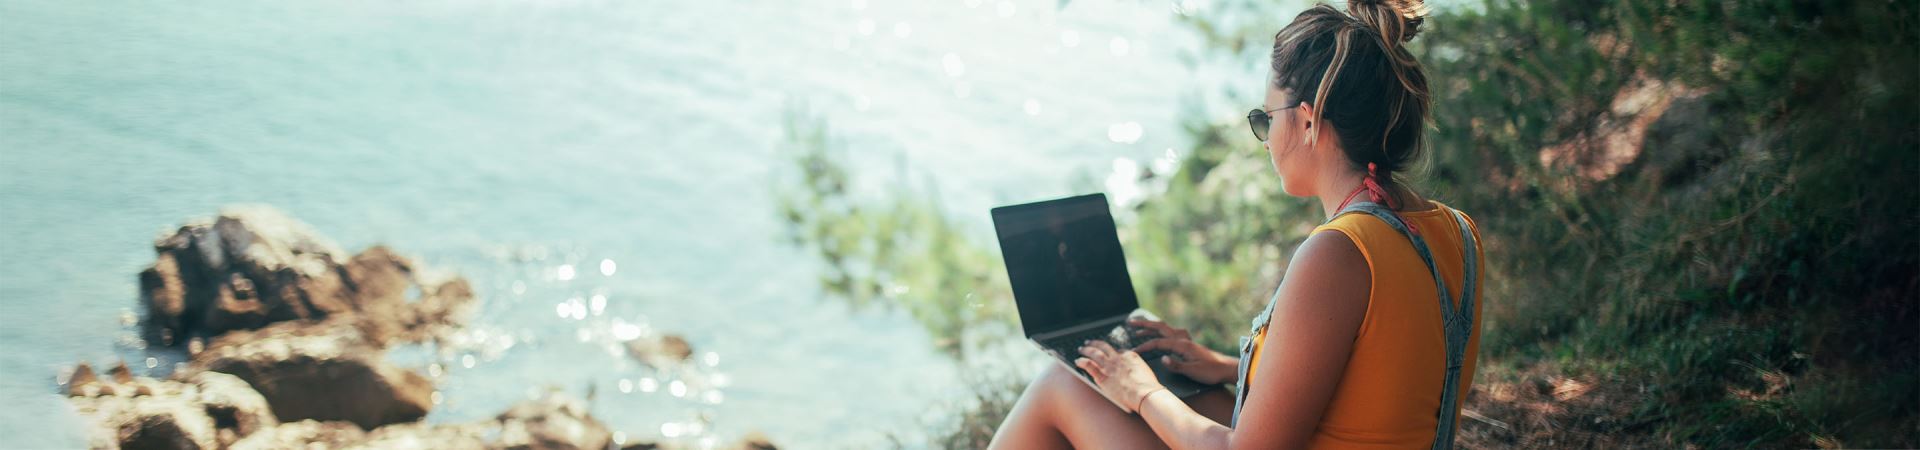 Das Bild zeigt ein Mädchen im Profil mit einem Laptop auf dem Schoß. Es trägt einen orangefarbenen Pullover und einen Jeansoverall und sitzt in einem Waldgebiet mit Blick auf das Meer.